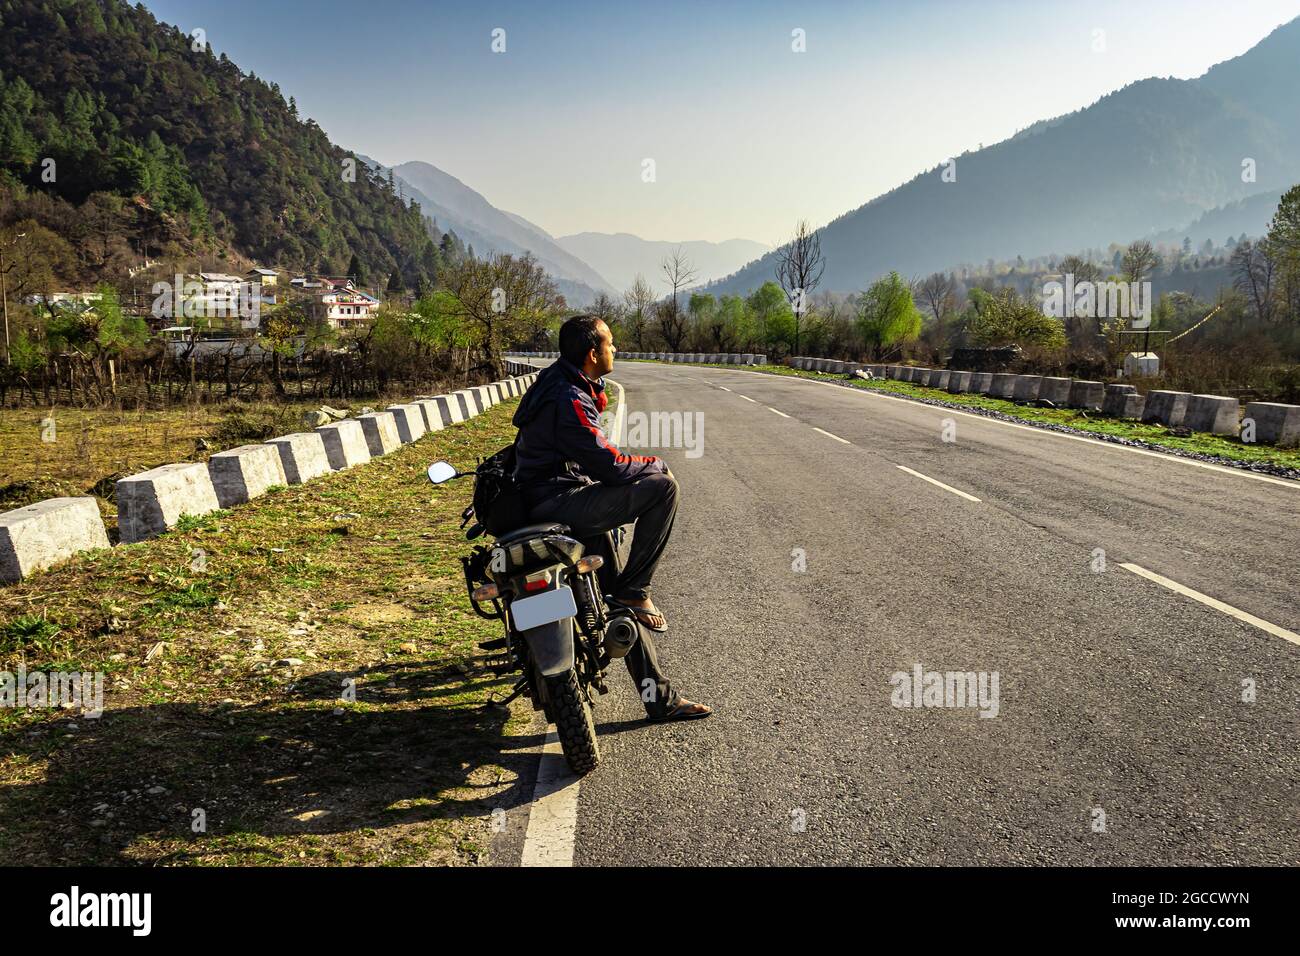 man sitting at motorcycle at tarmac road with beautiful natural view at morning image is taken at shergaon arunachal pradesh india. Stock Photo